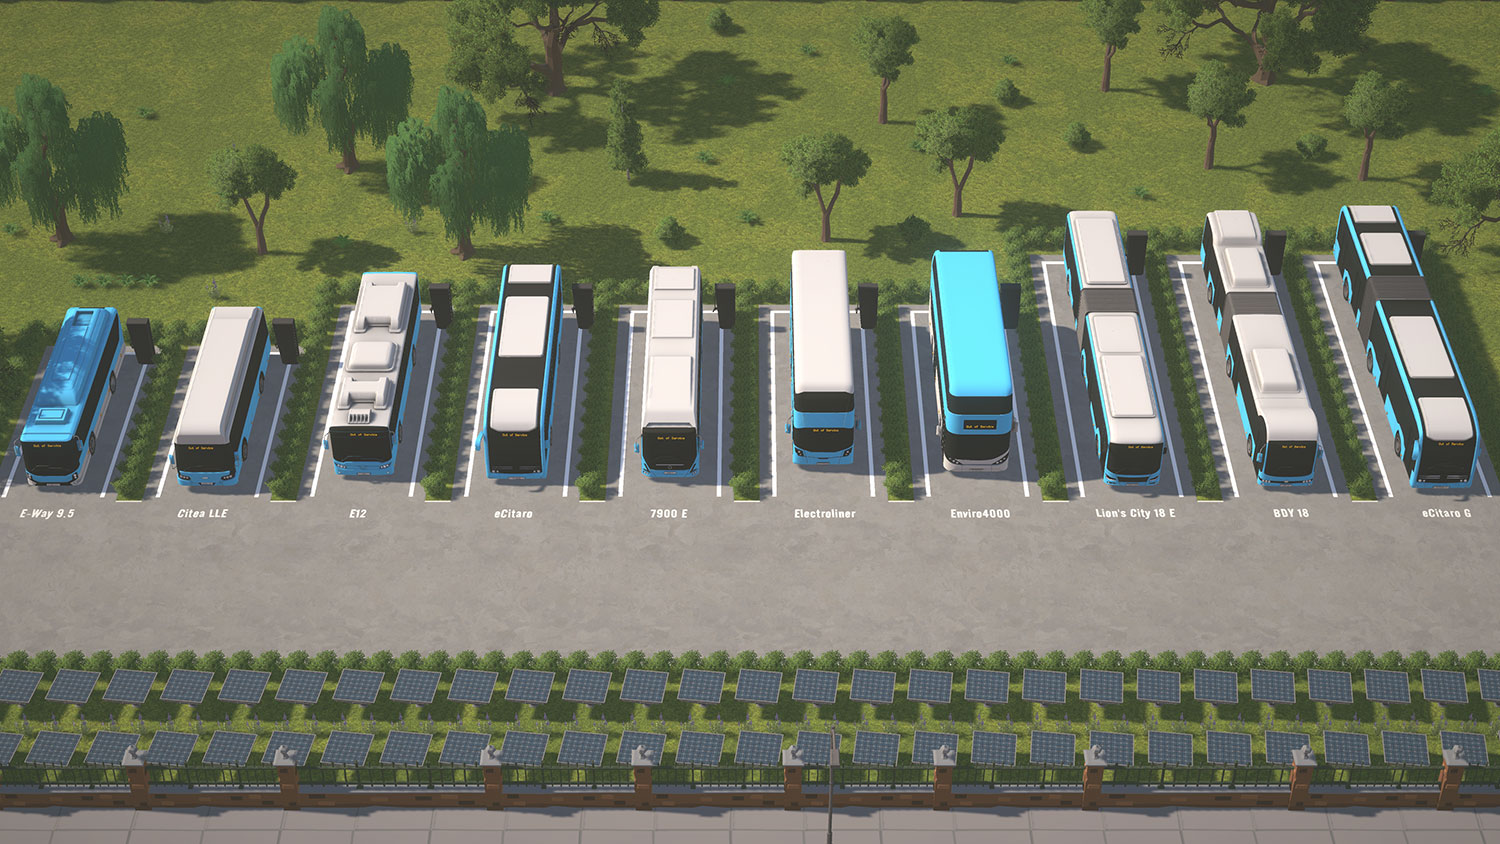 City Bus Manager - E-Bus & Green Energy